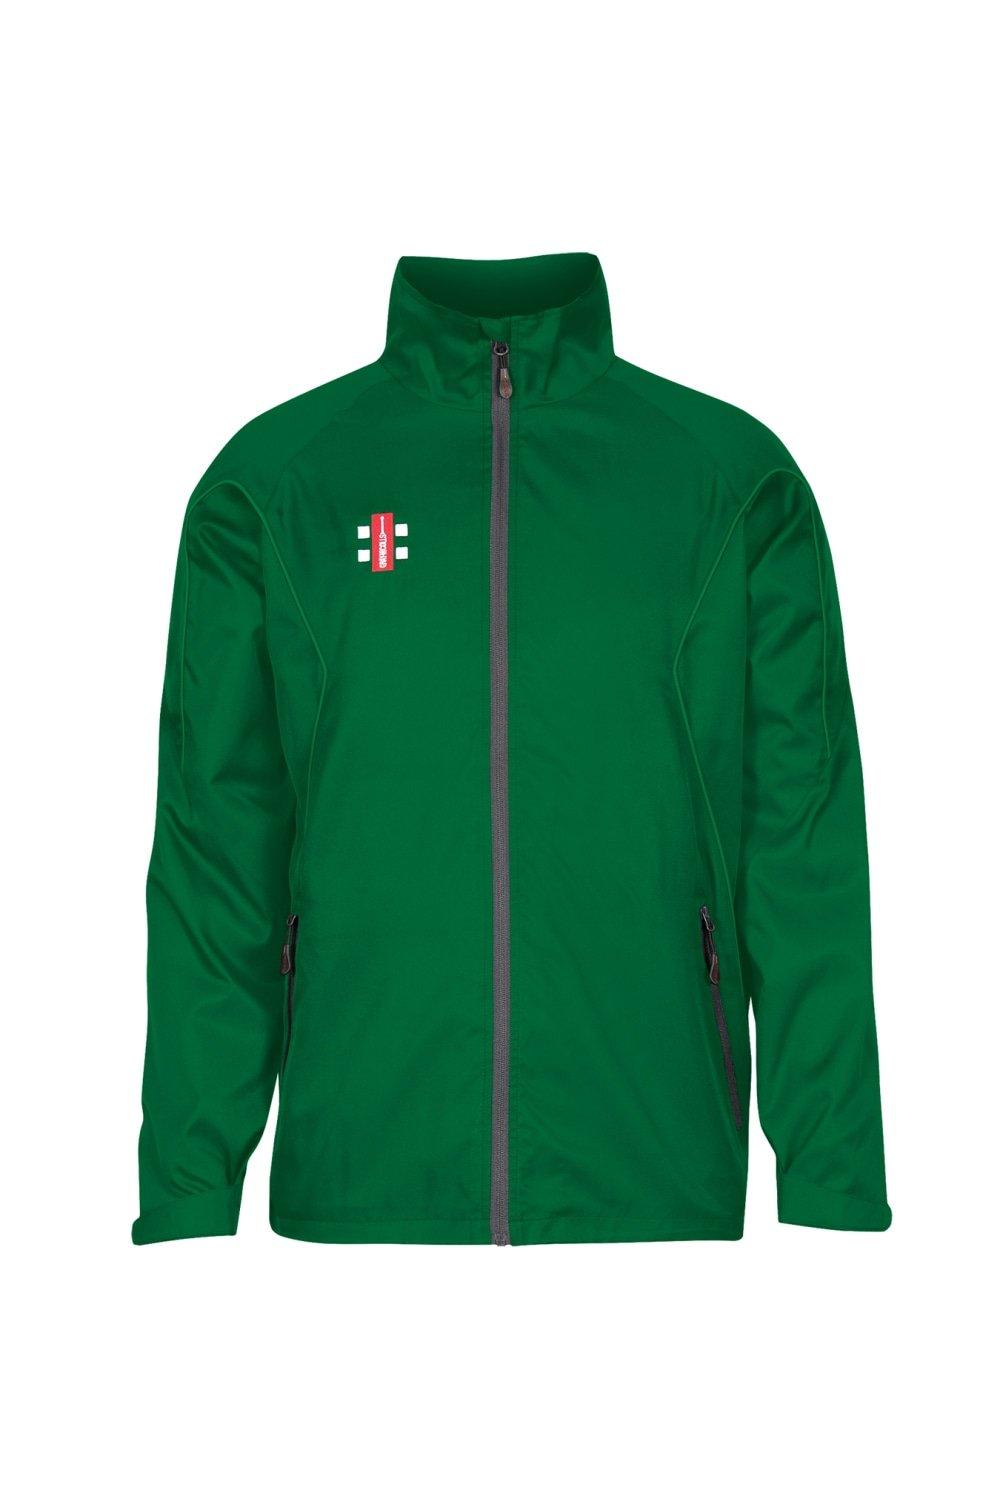 Тренировочная куртка Storm Gray-Nicolls, зеленый топ длинный 42 44 размер